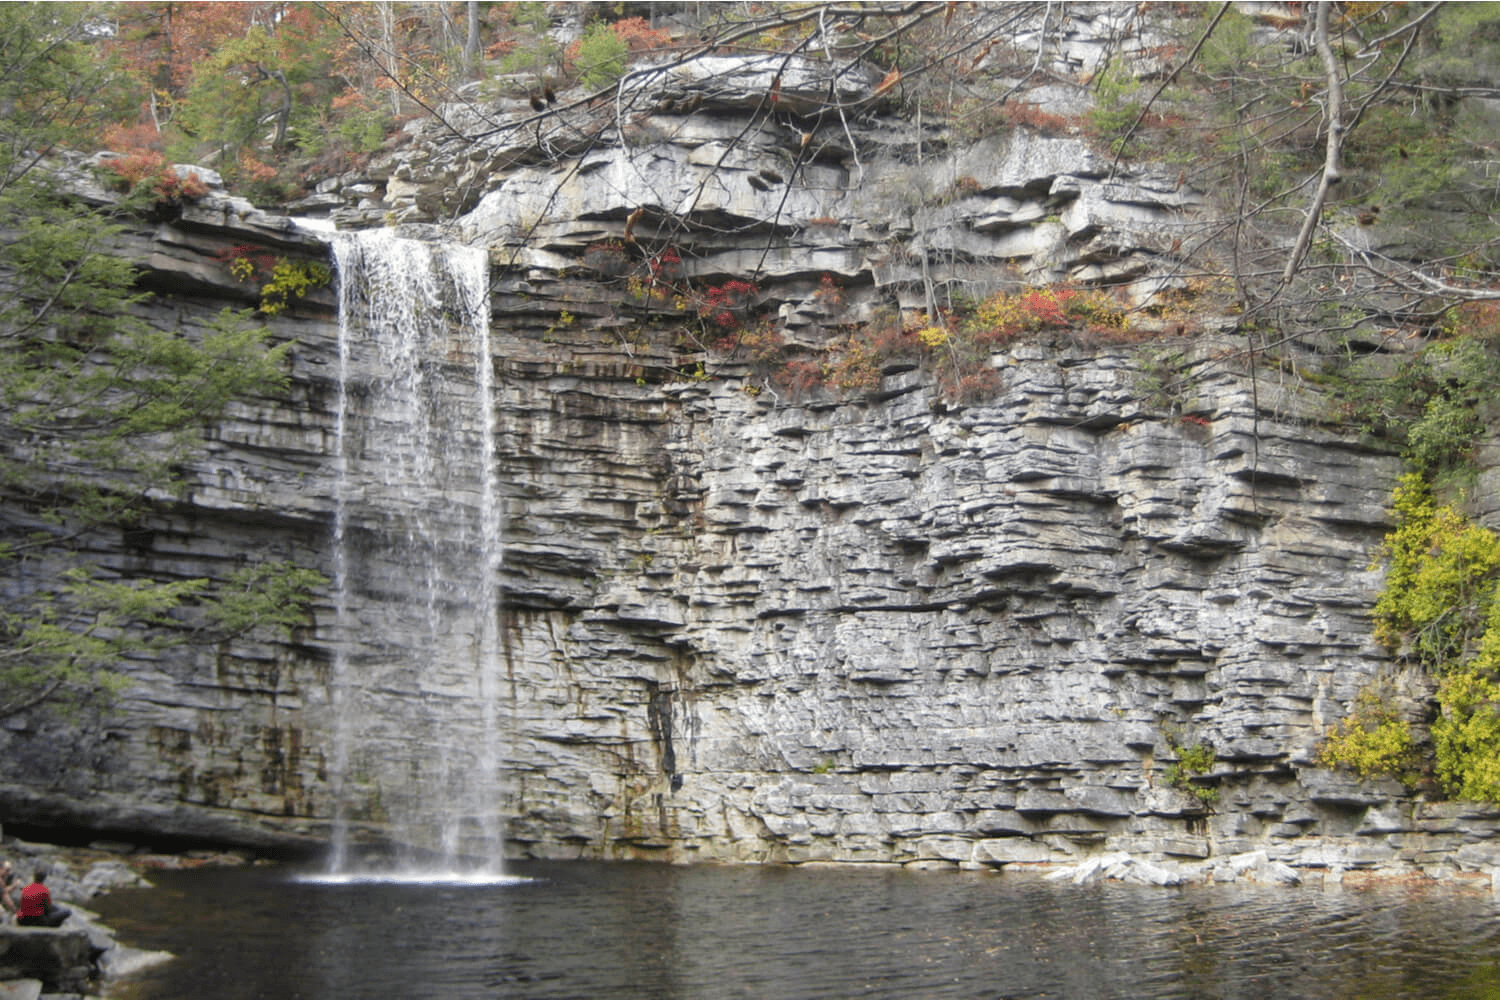 Scenic photo of one of the Adirondack waterfalls